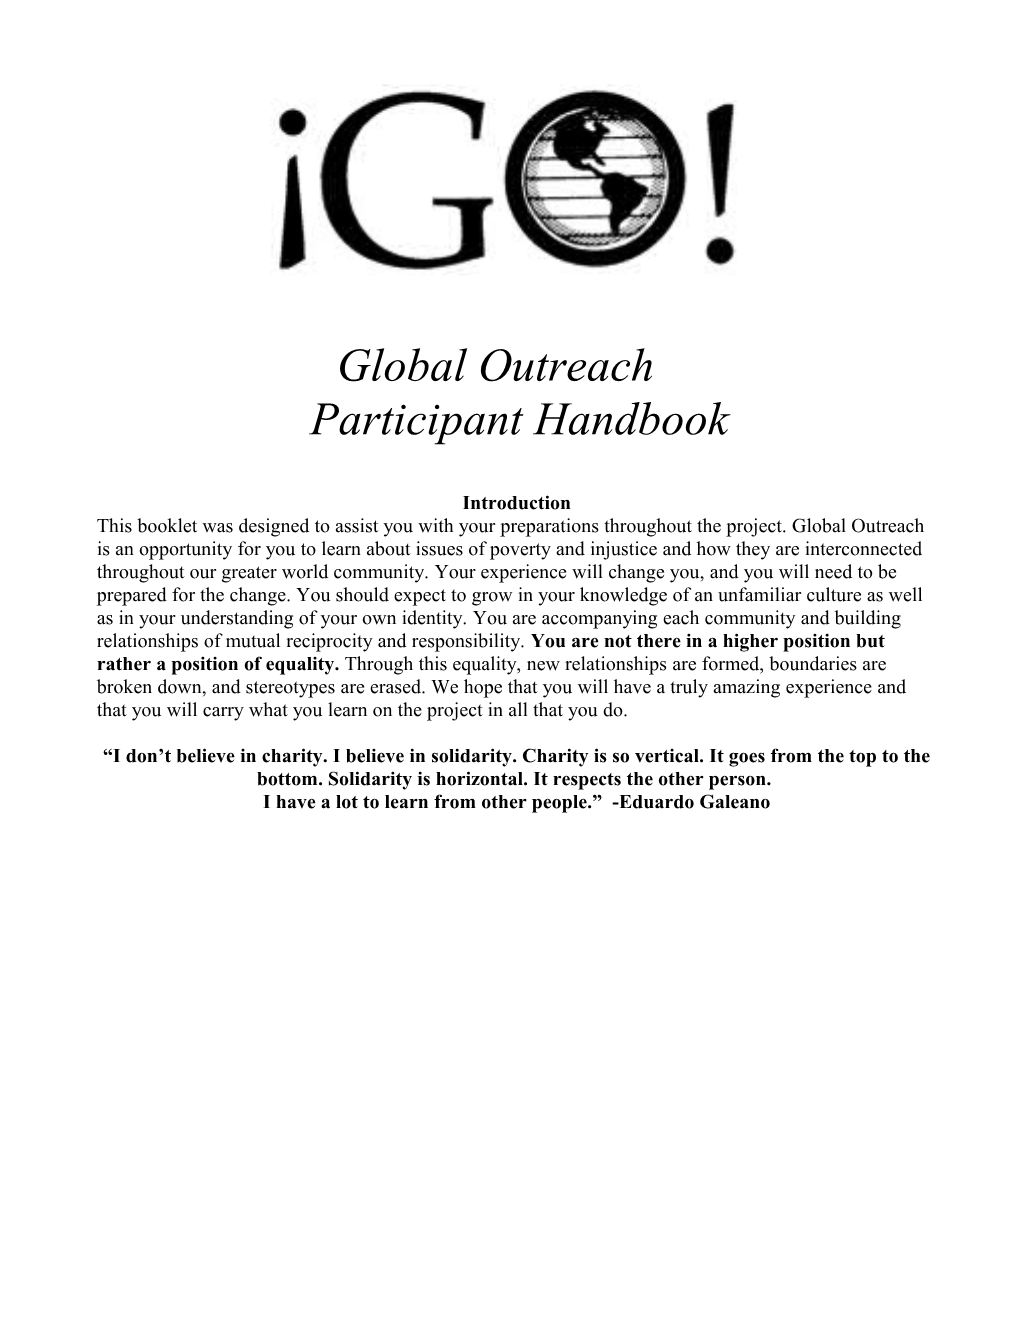 Global Outreach Handbook